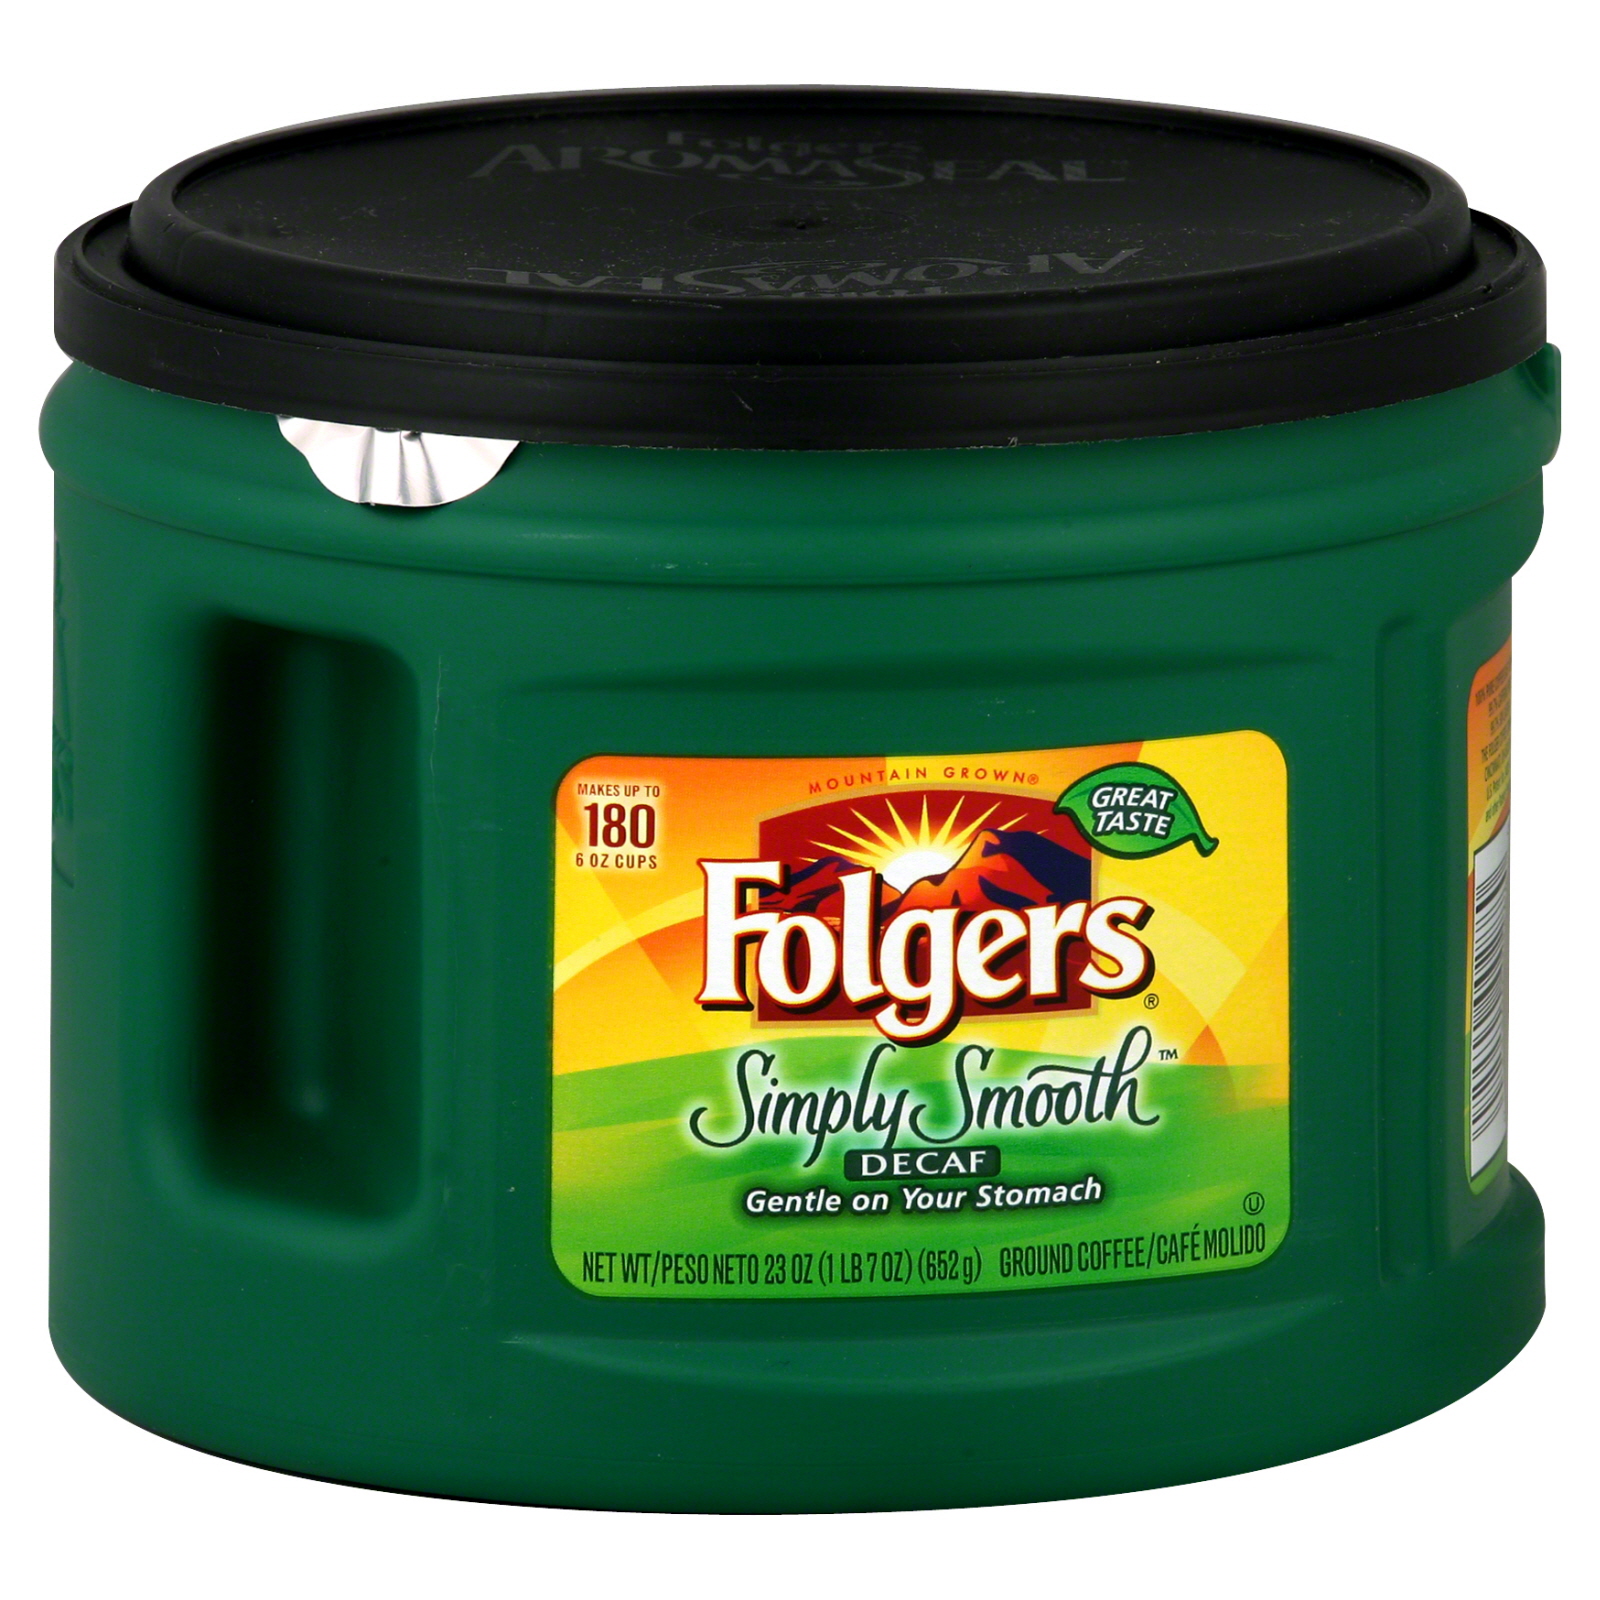 Folgers Simply Smooth Ground Coffee, Decaf, 23 oz (1 lb 7 oz) 652 g